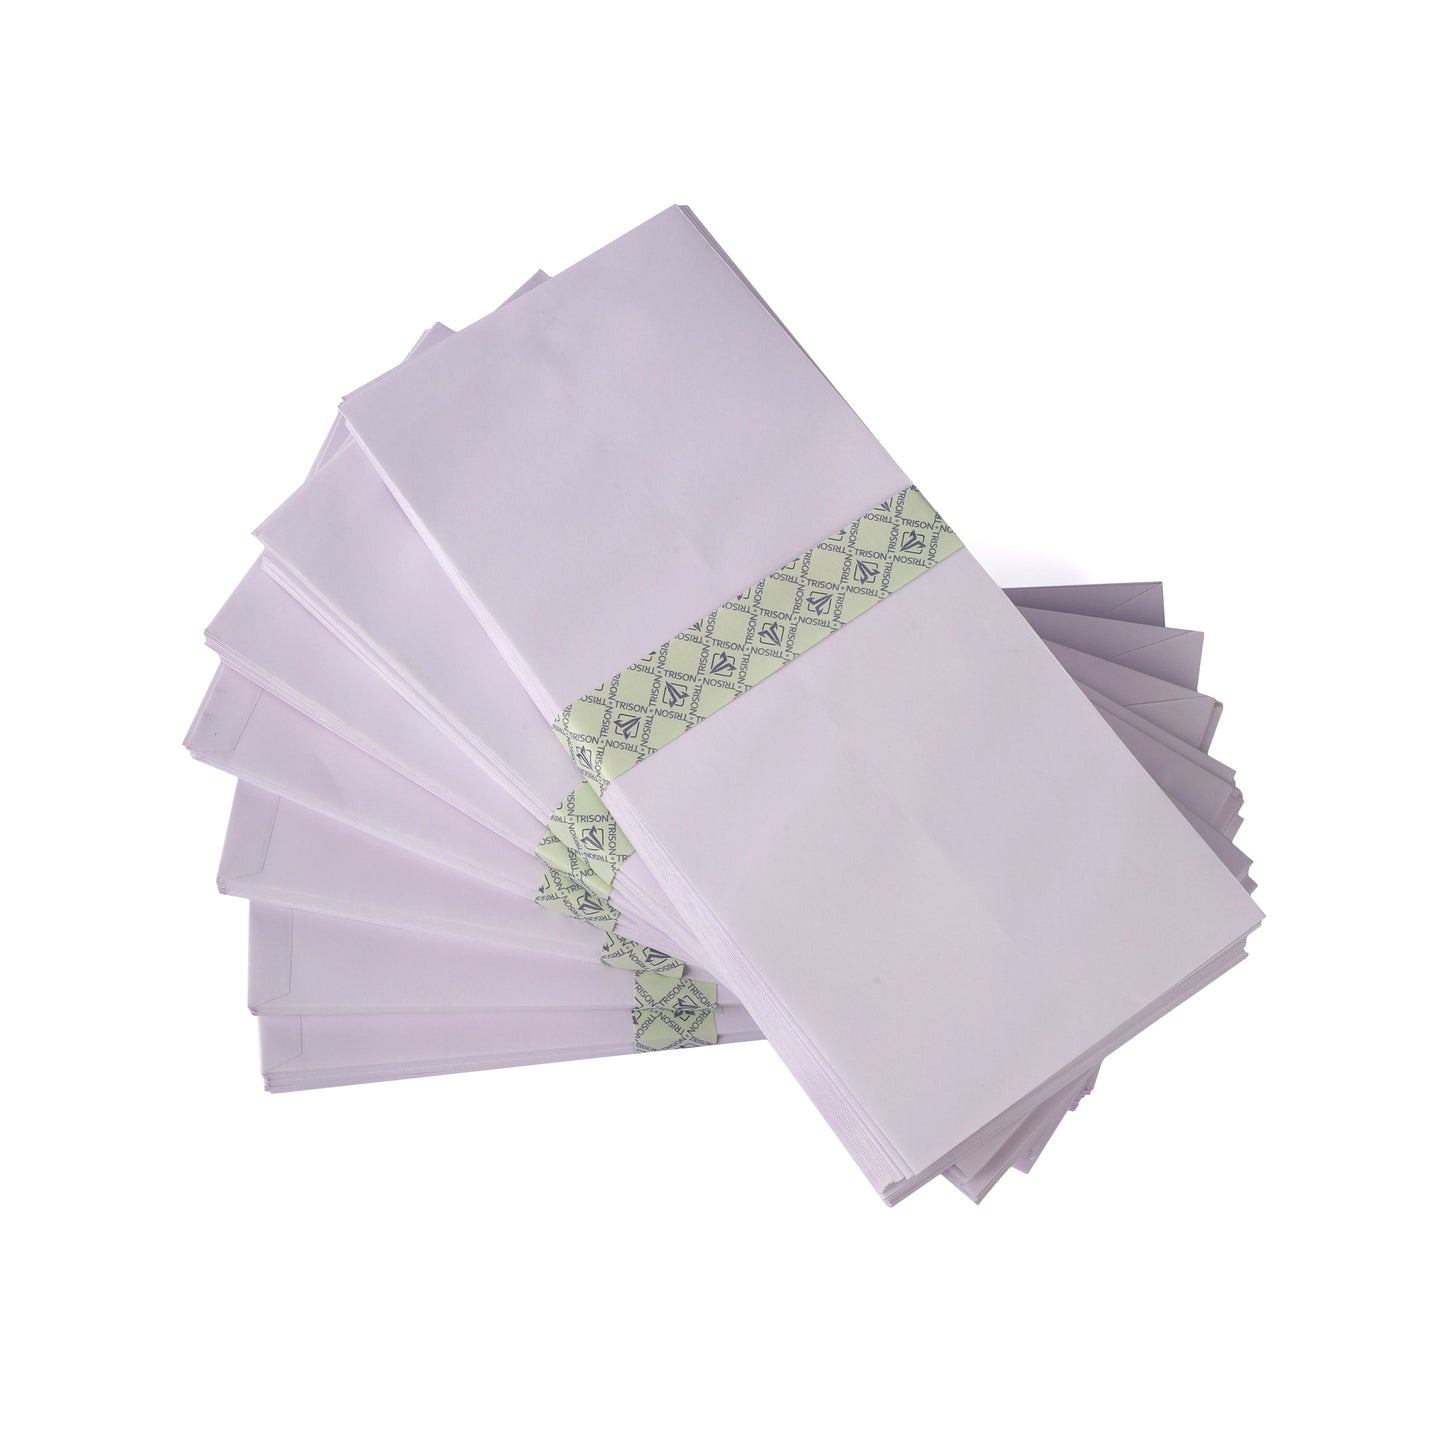 Trison White Envelopes (100 GSM)